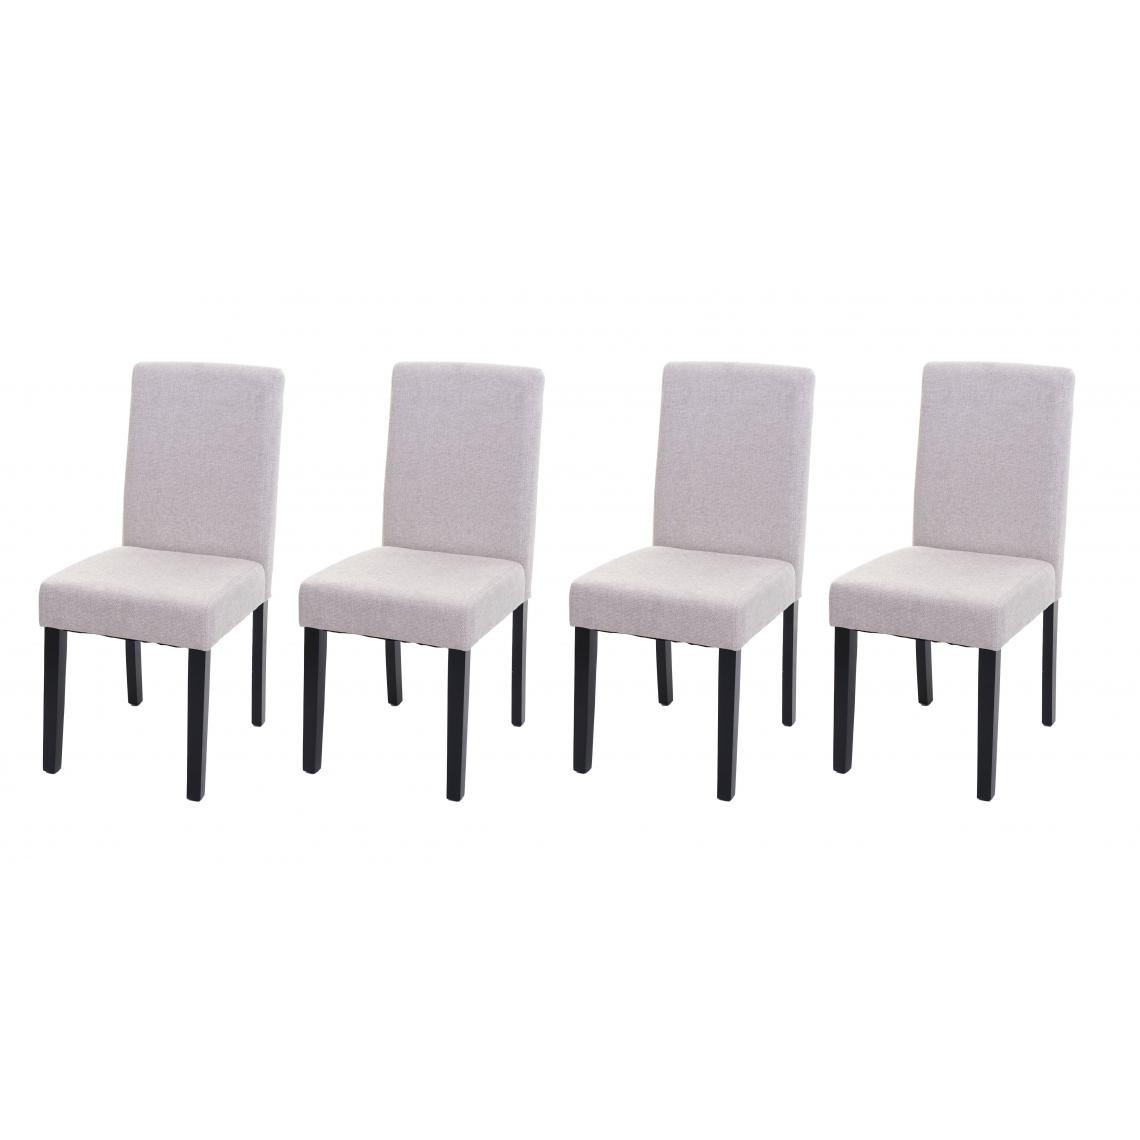 Decoshop26 - Lot de 4 chaises de salle à manger en tissu crème pieds foncés CDS04560 - Chaises